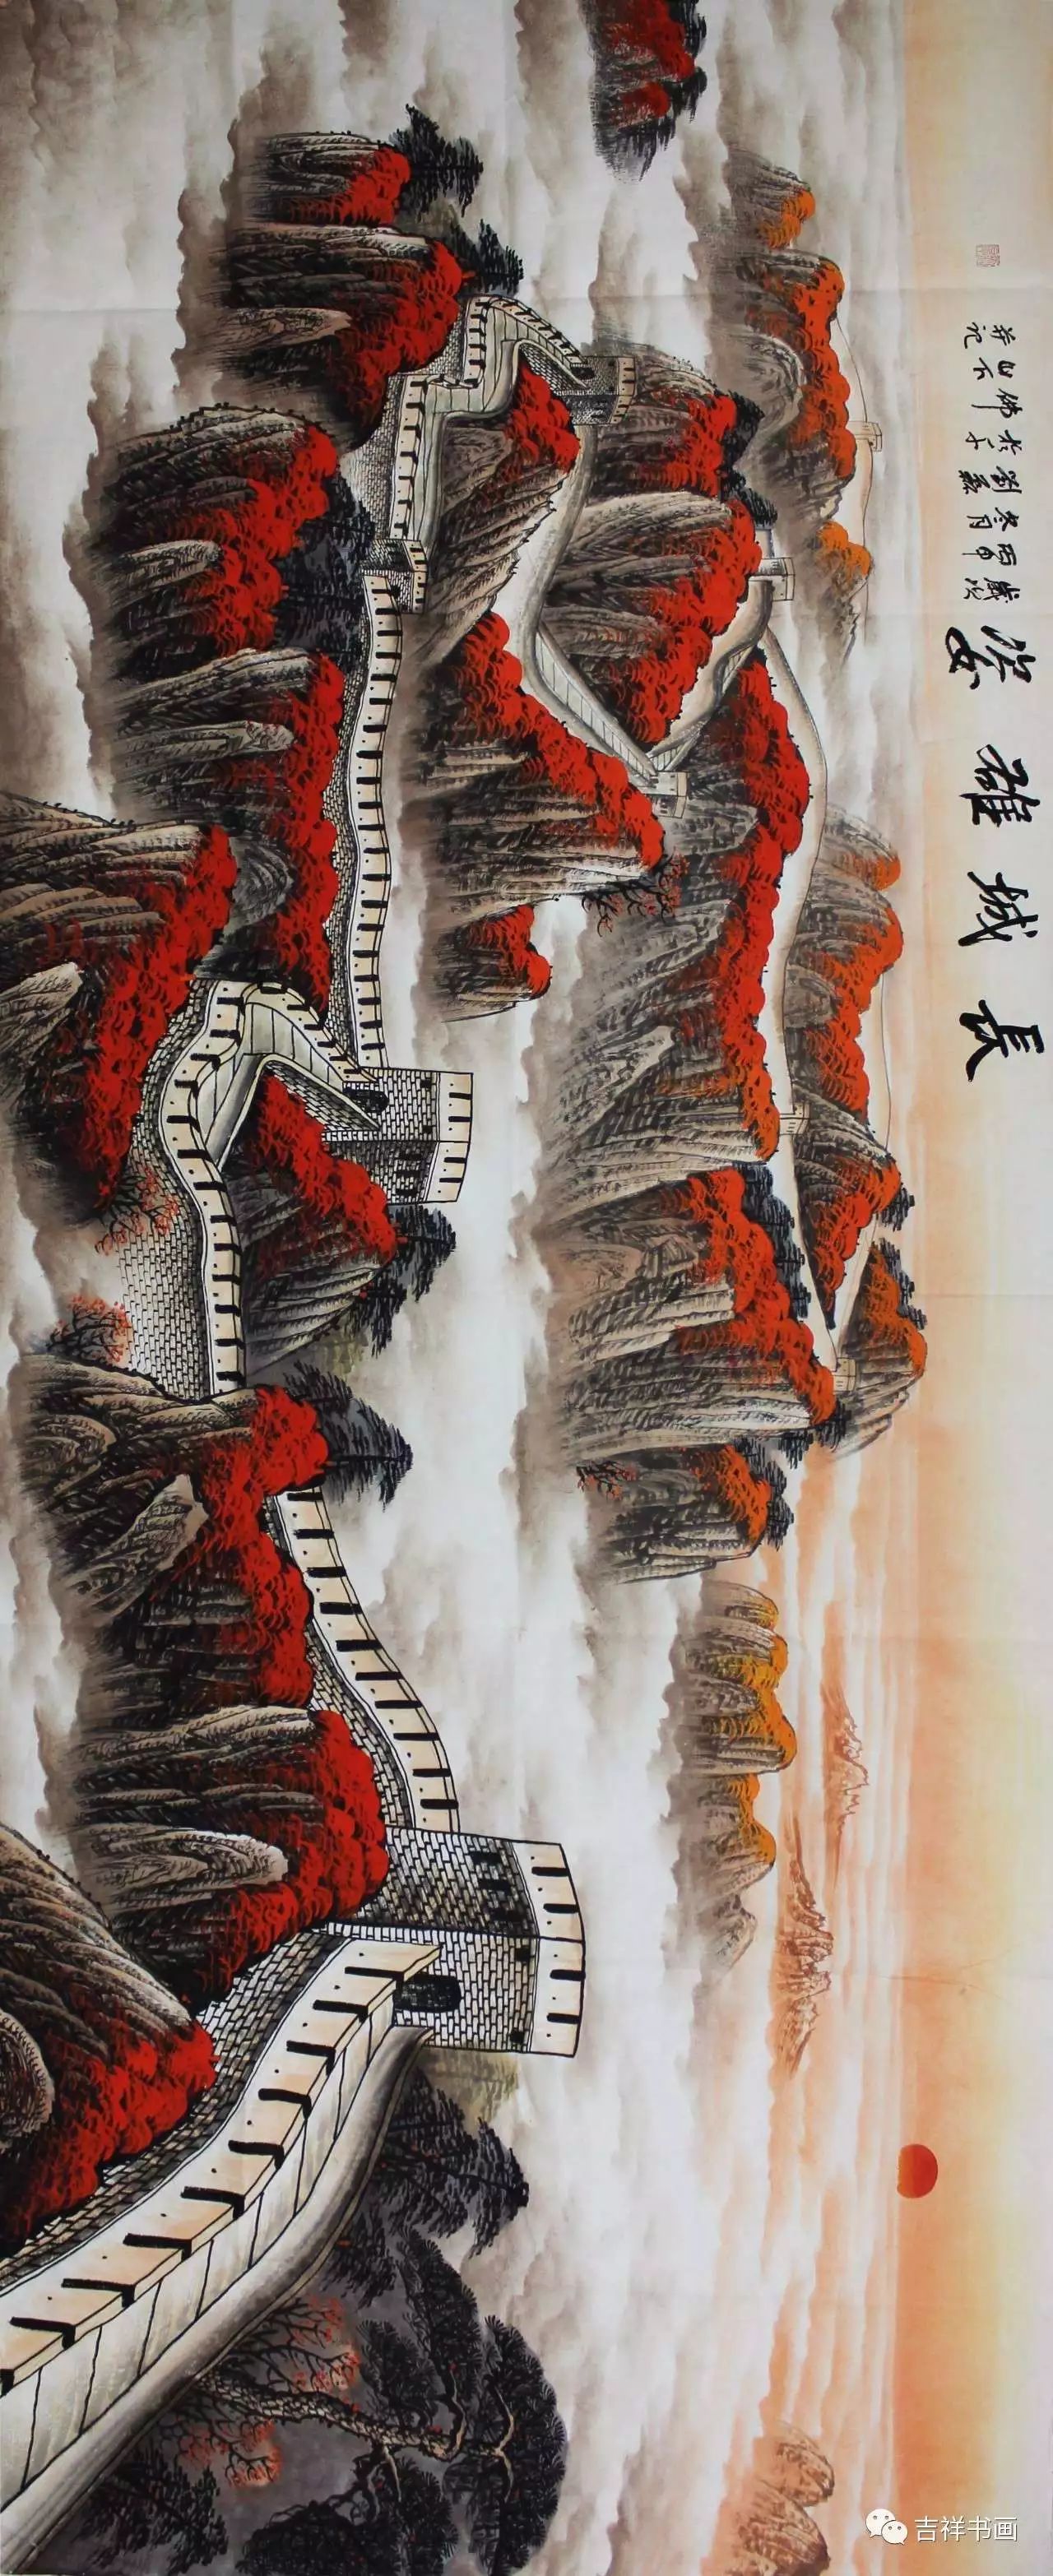 中国剪纸协会会员,北京市美术家协会会员,画艺广泛又精工工笔人物